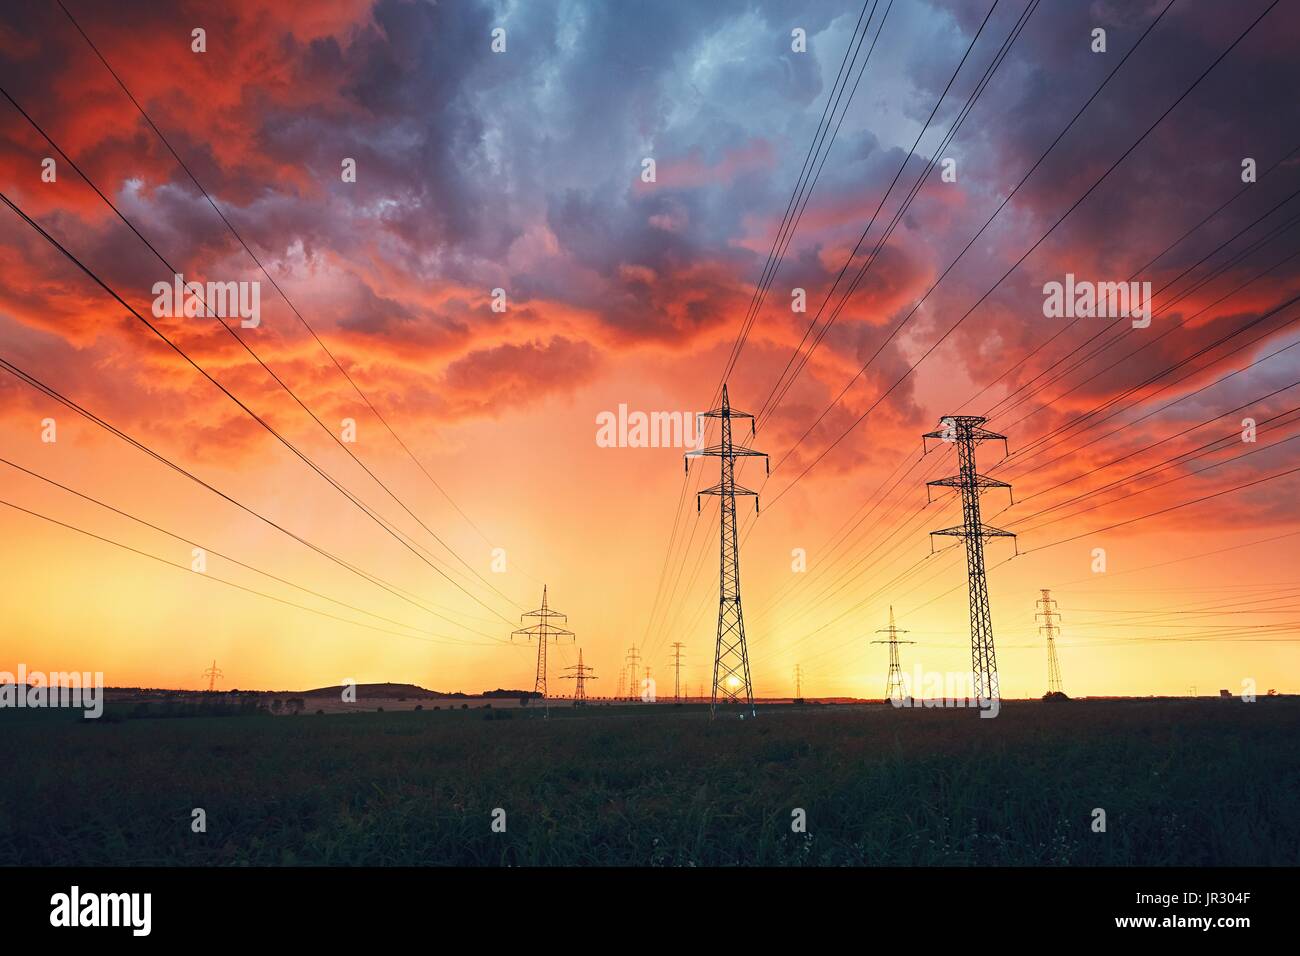 Das Wetter ist gefährlich. Strommasten mit Stromleitungen in atemberaubenden Sturm während der farbenprächtigen Sonnenuntergang. Stockfoto